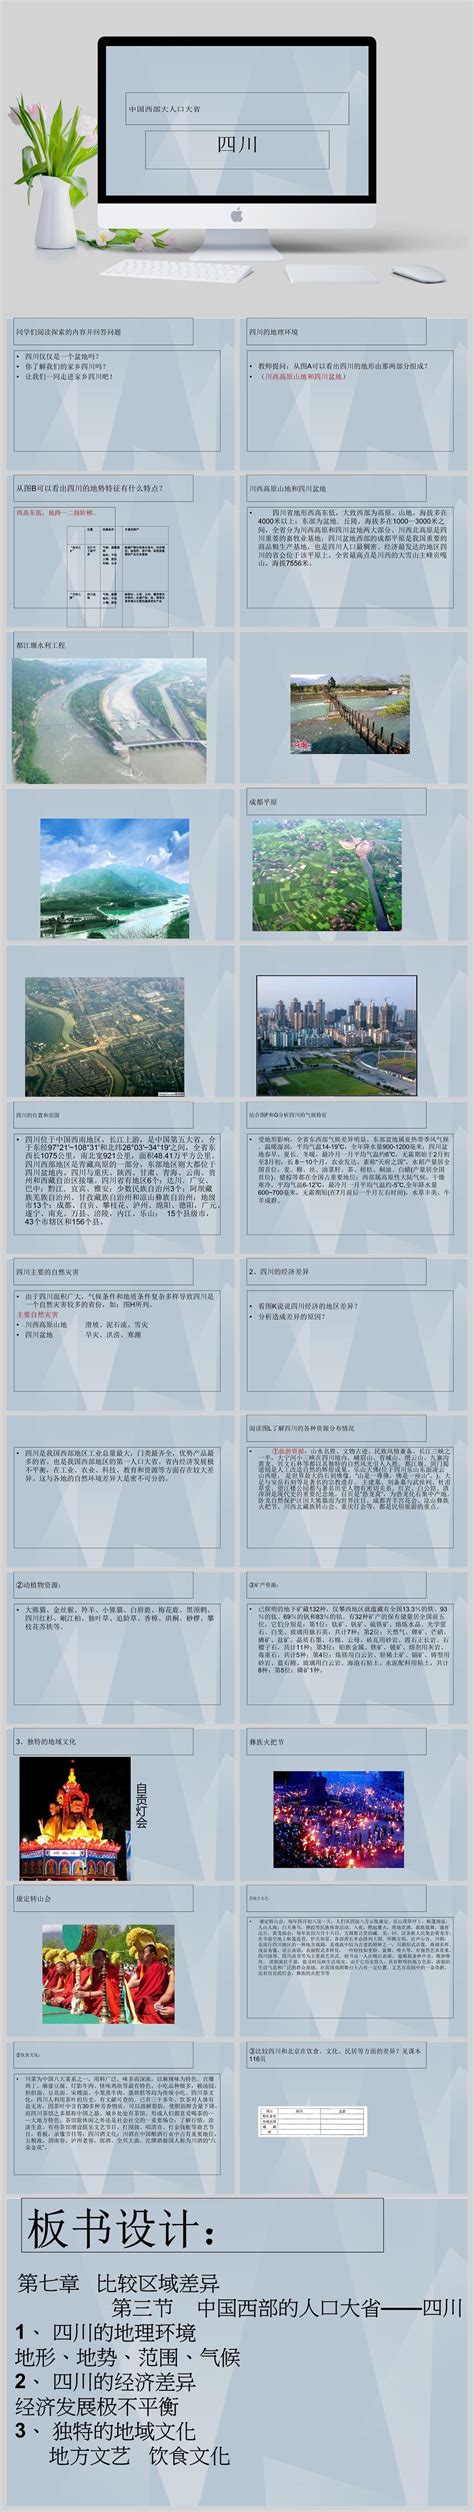 四川旅游海报设计模板PSD素材 - 爱图网